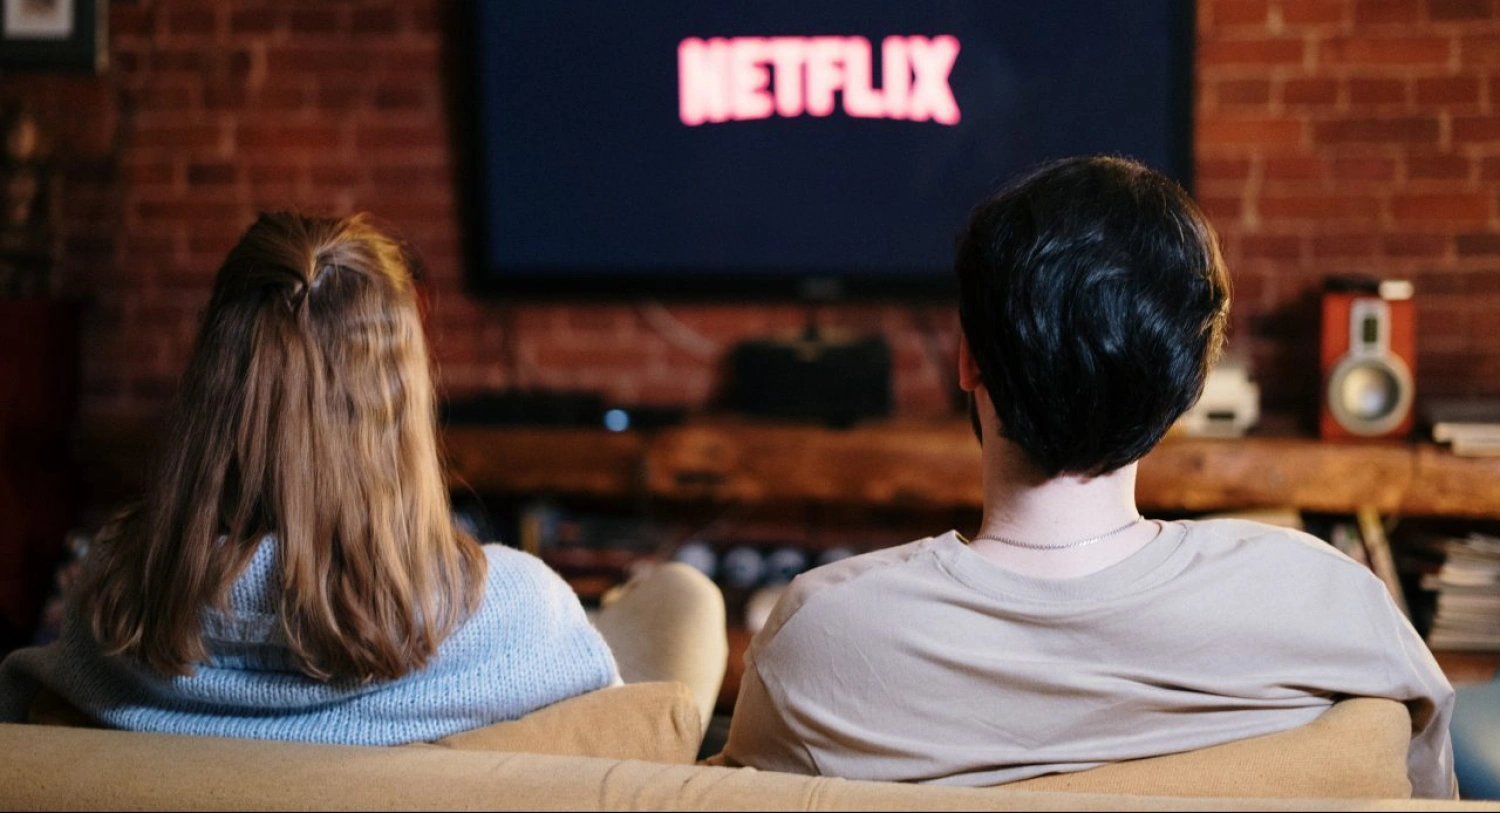 Čo sledovať na HBO a Netflixe? Tu je 8 tipov na obľúbené filmy a dokumenty